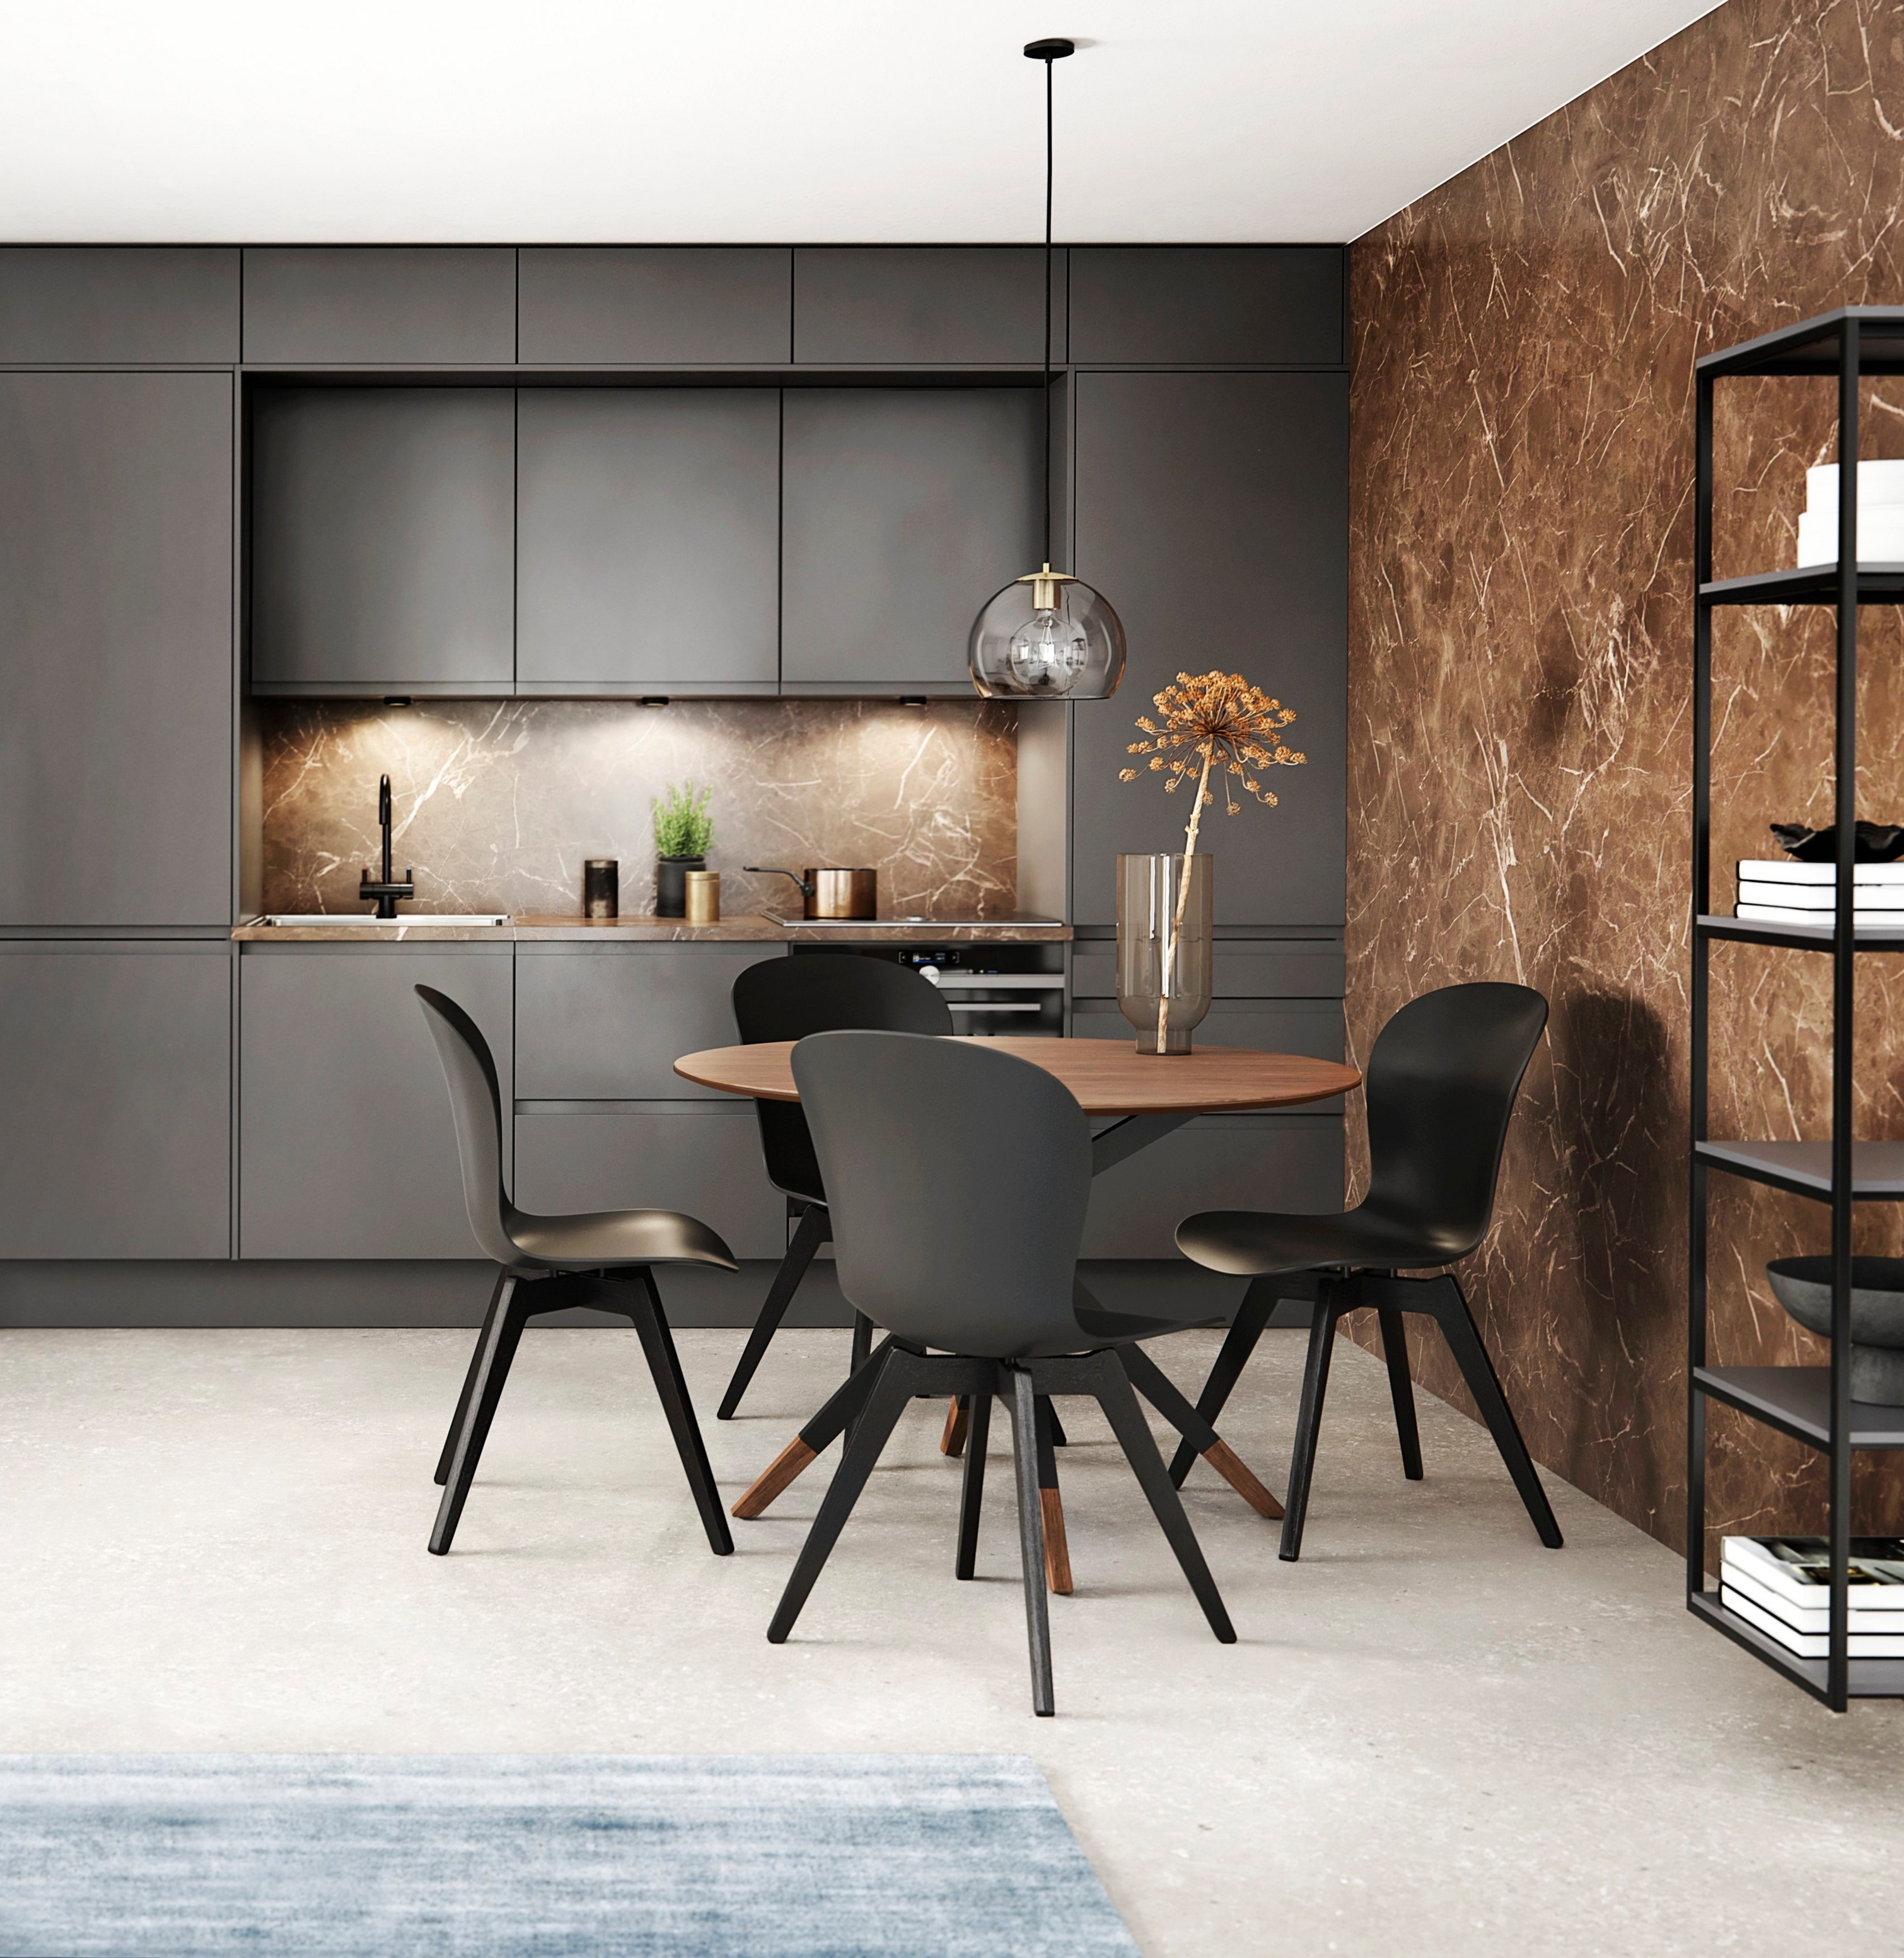 Moderne Küche mit dunklem Schrank, Marmorrückwand und einem Esszimmer-Bereich mit rundem Tisch und schwarzen Stühlen.